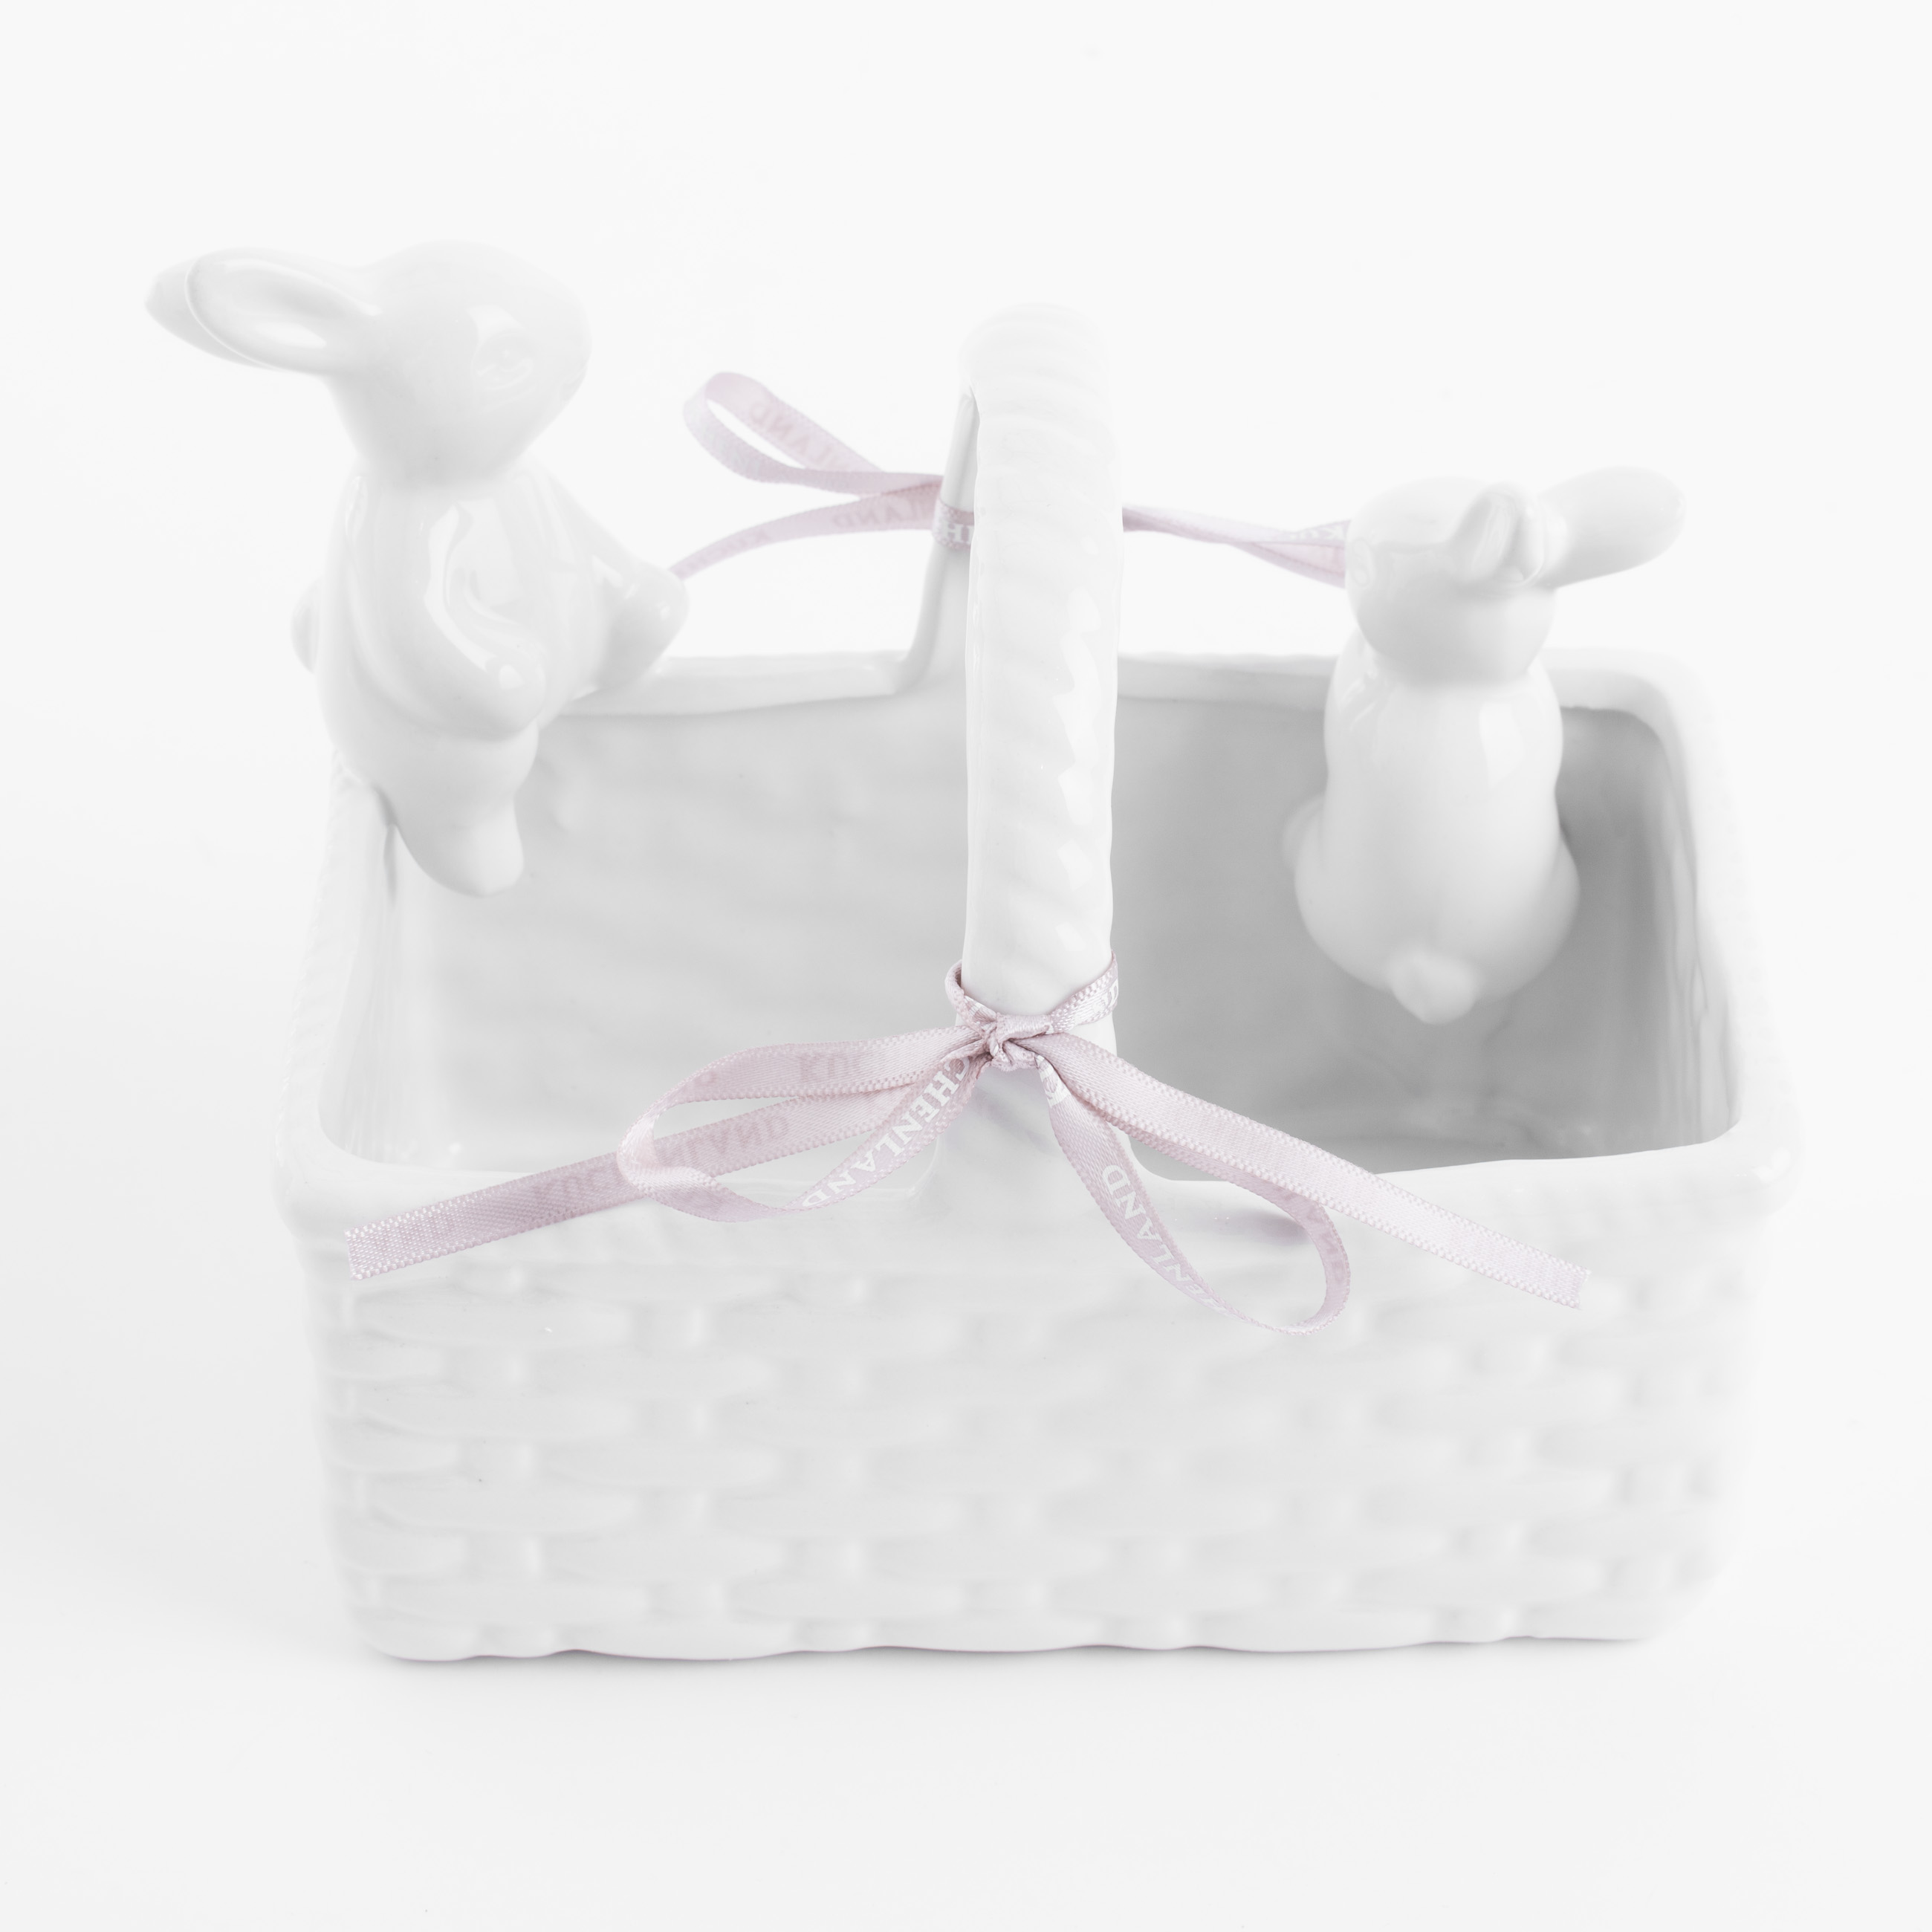 Конфетница, 18x14 см, с ручкой, керамика, молочная, Кролики в корзине, Natural Easter изображение № 2